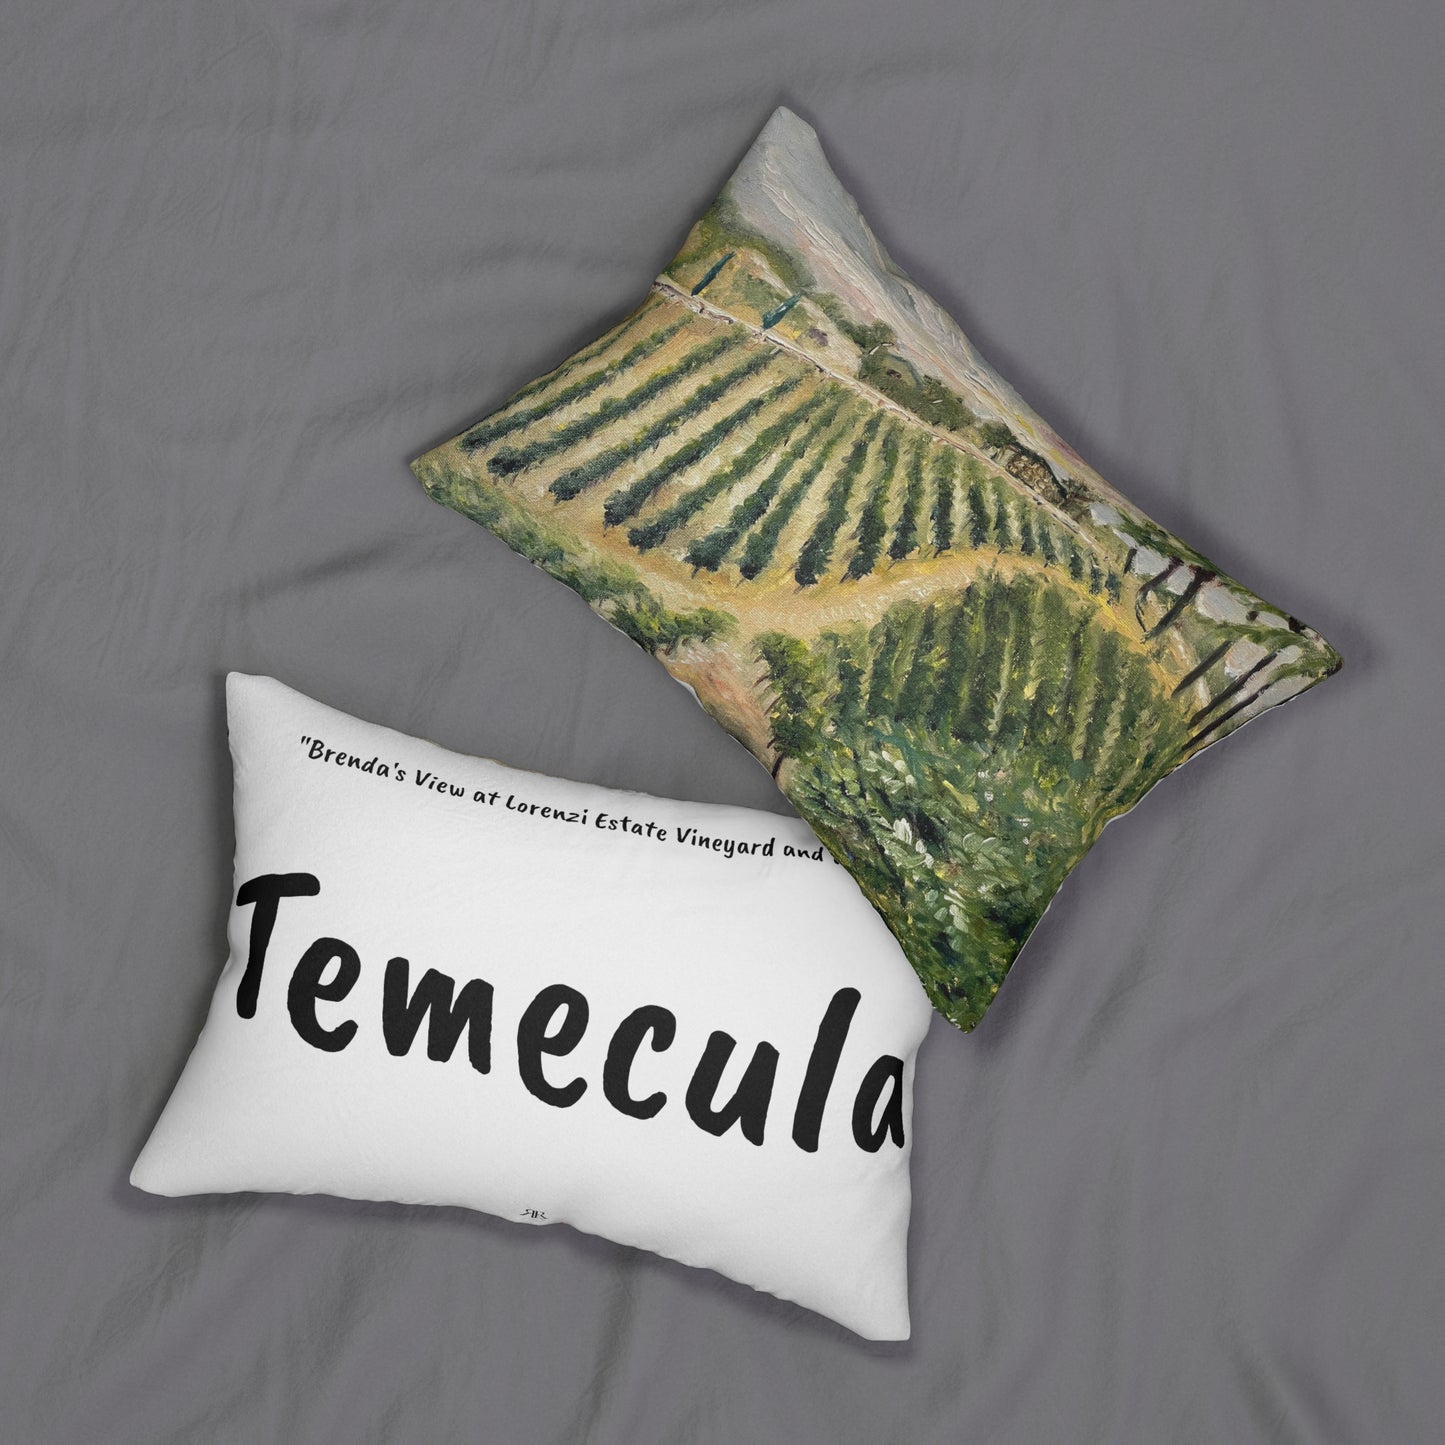 Almohada lumbar Temecula con la pintura "Brenda's View at Lorenzi Estate" y "Temecula"